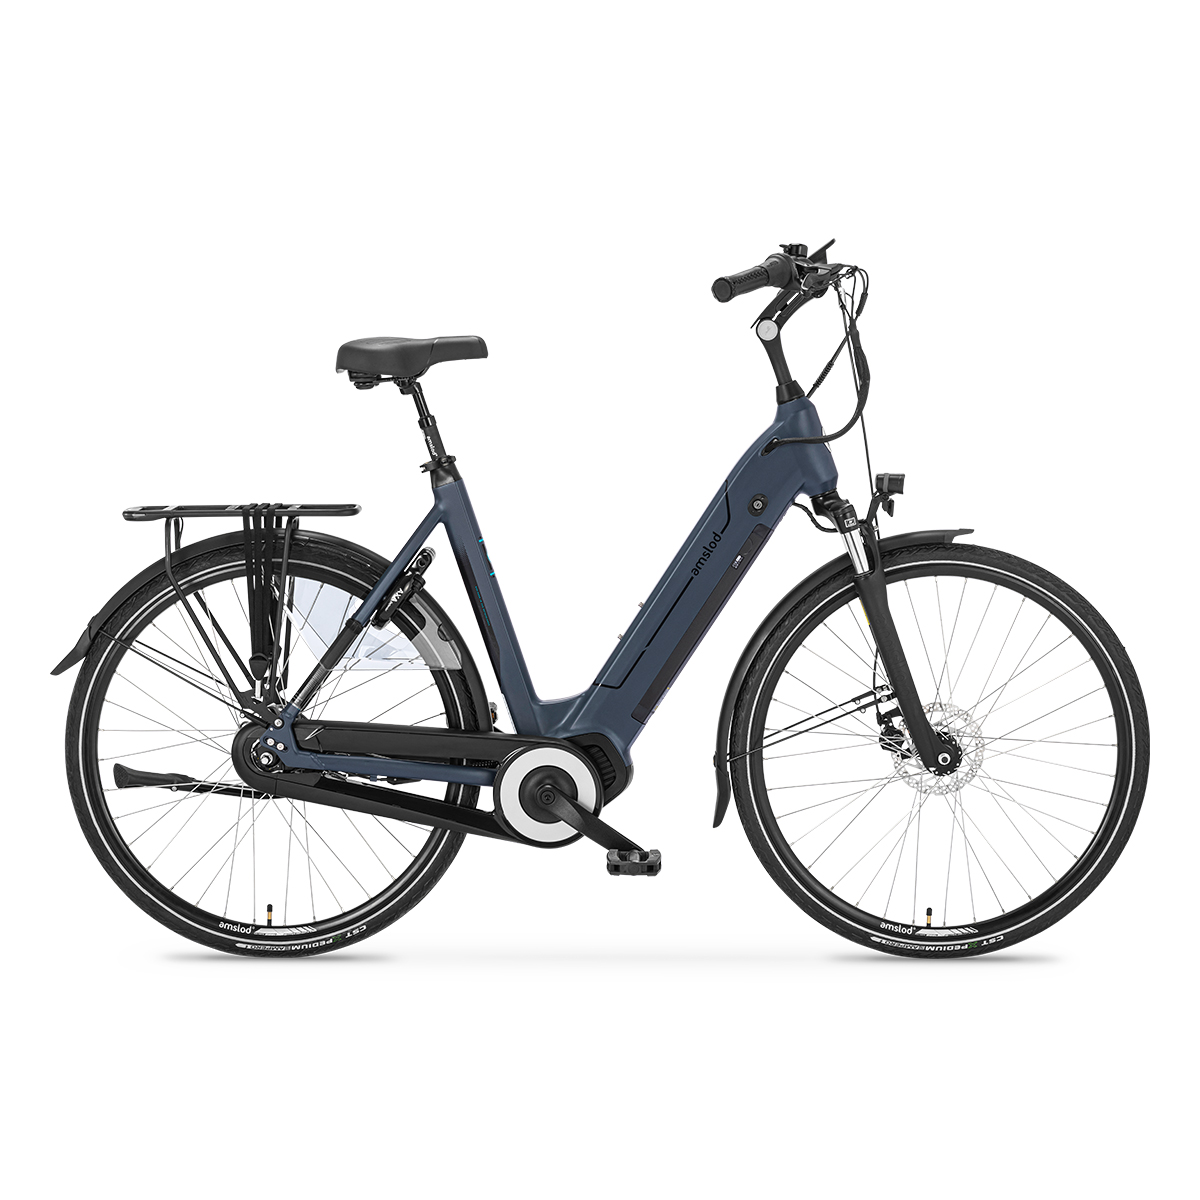 Afbeelding Amslod elektrische fiets active max hedon amslod fietsen 2